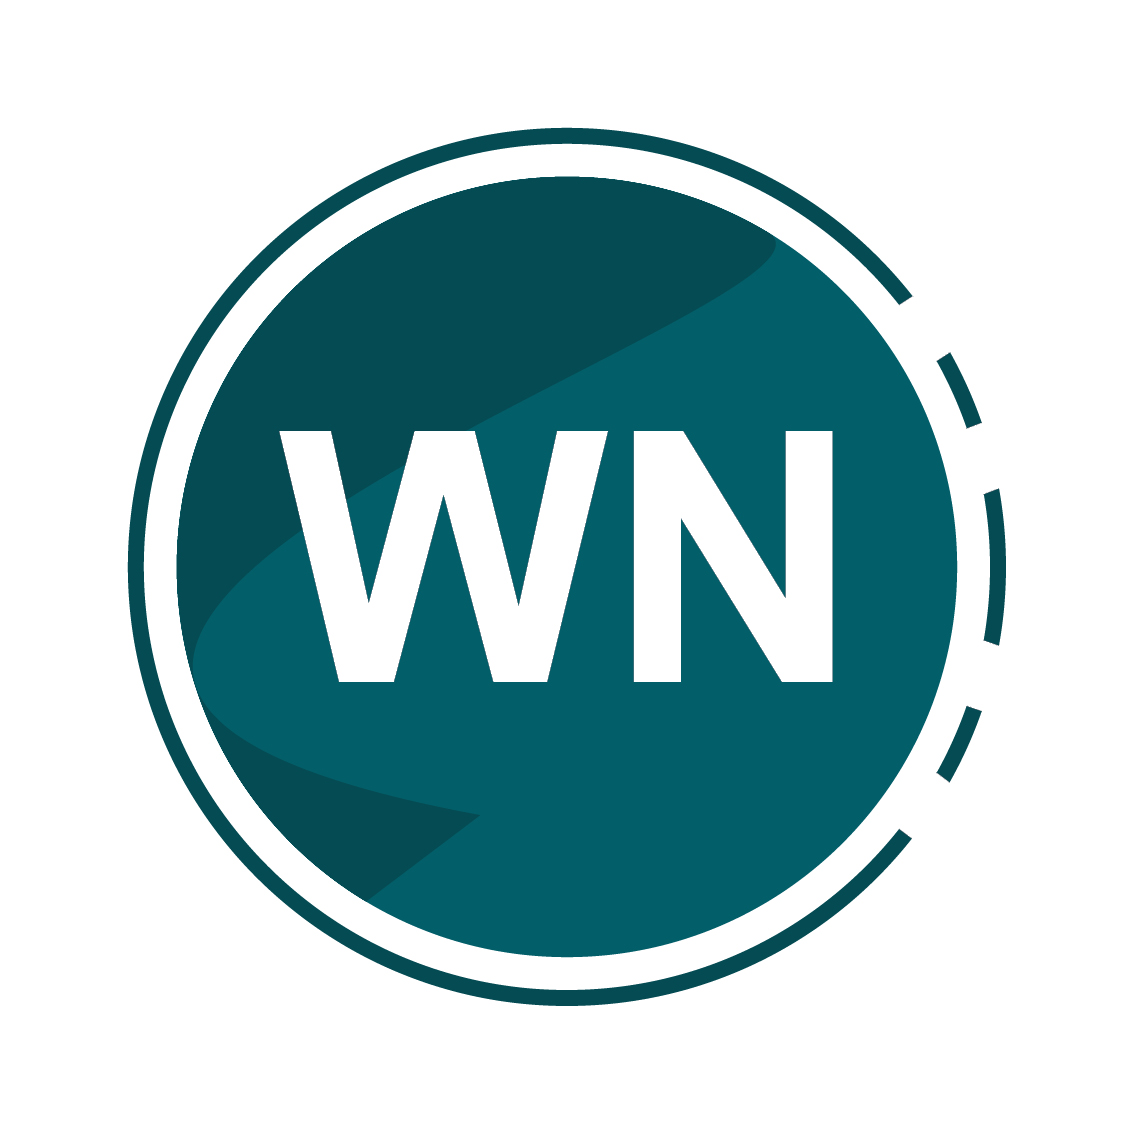 Women's network logo